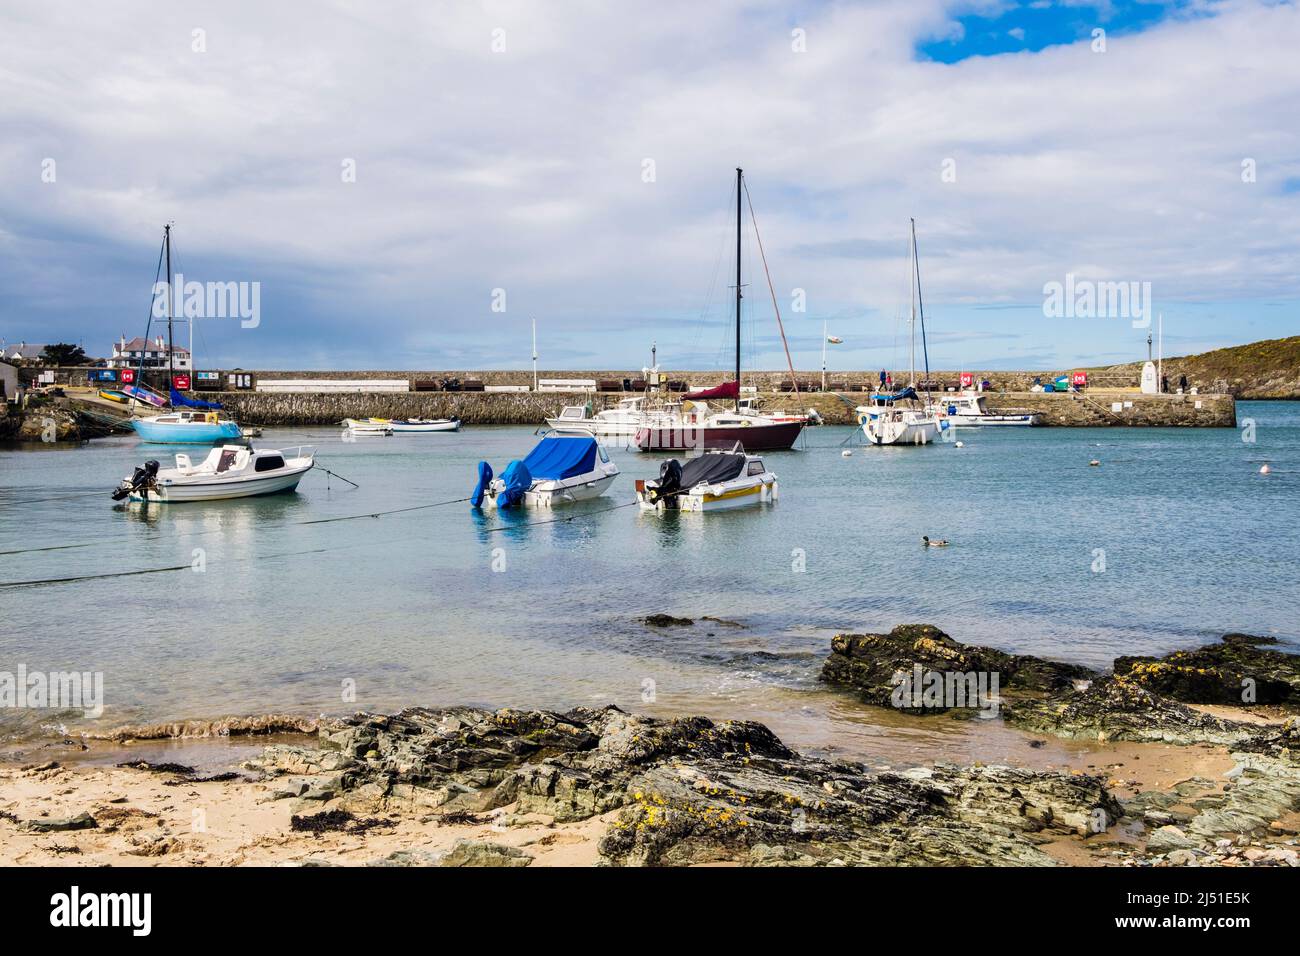 Barcos amarrados en el puerto de Cemaes en marea alta en la costa norte. Cemaes Bay, Cemaes, Isla de Anglesey, al norte de Gales, Reino Unido, Gran Bretaña Foto de stock